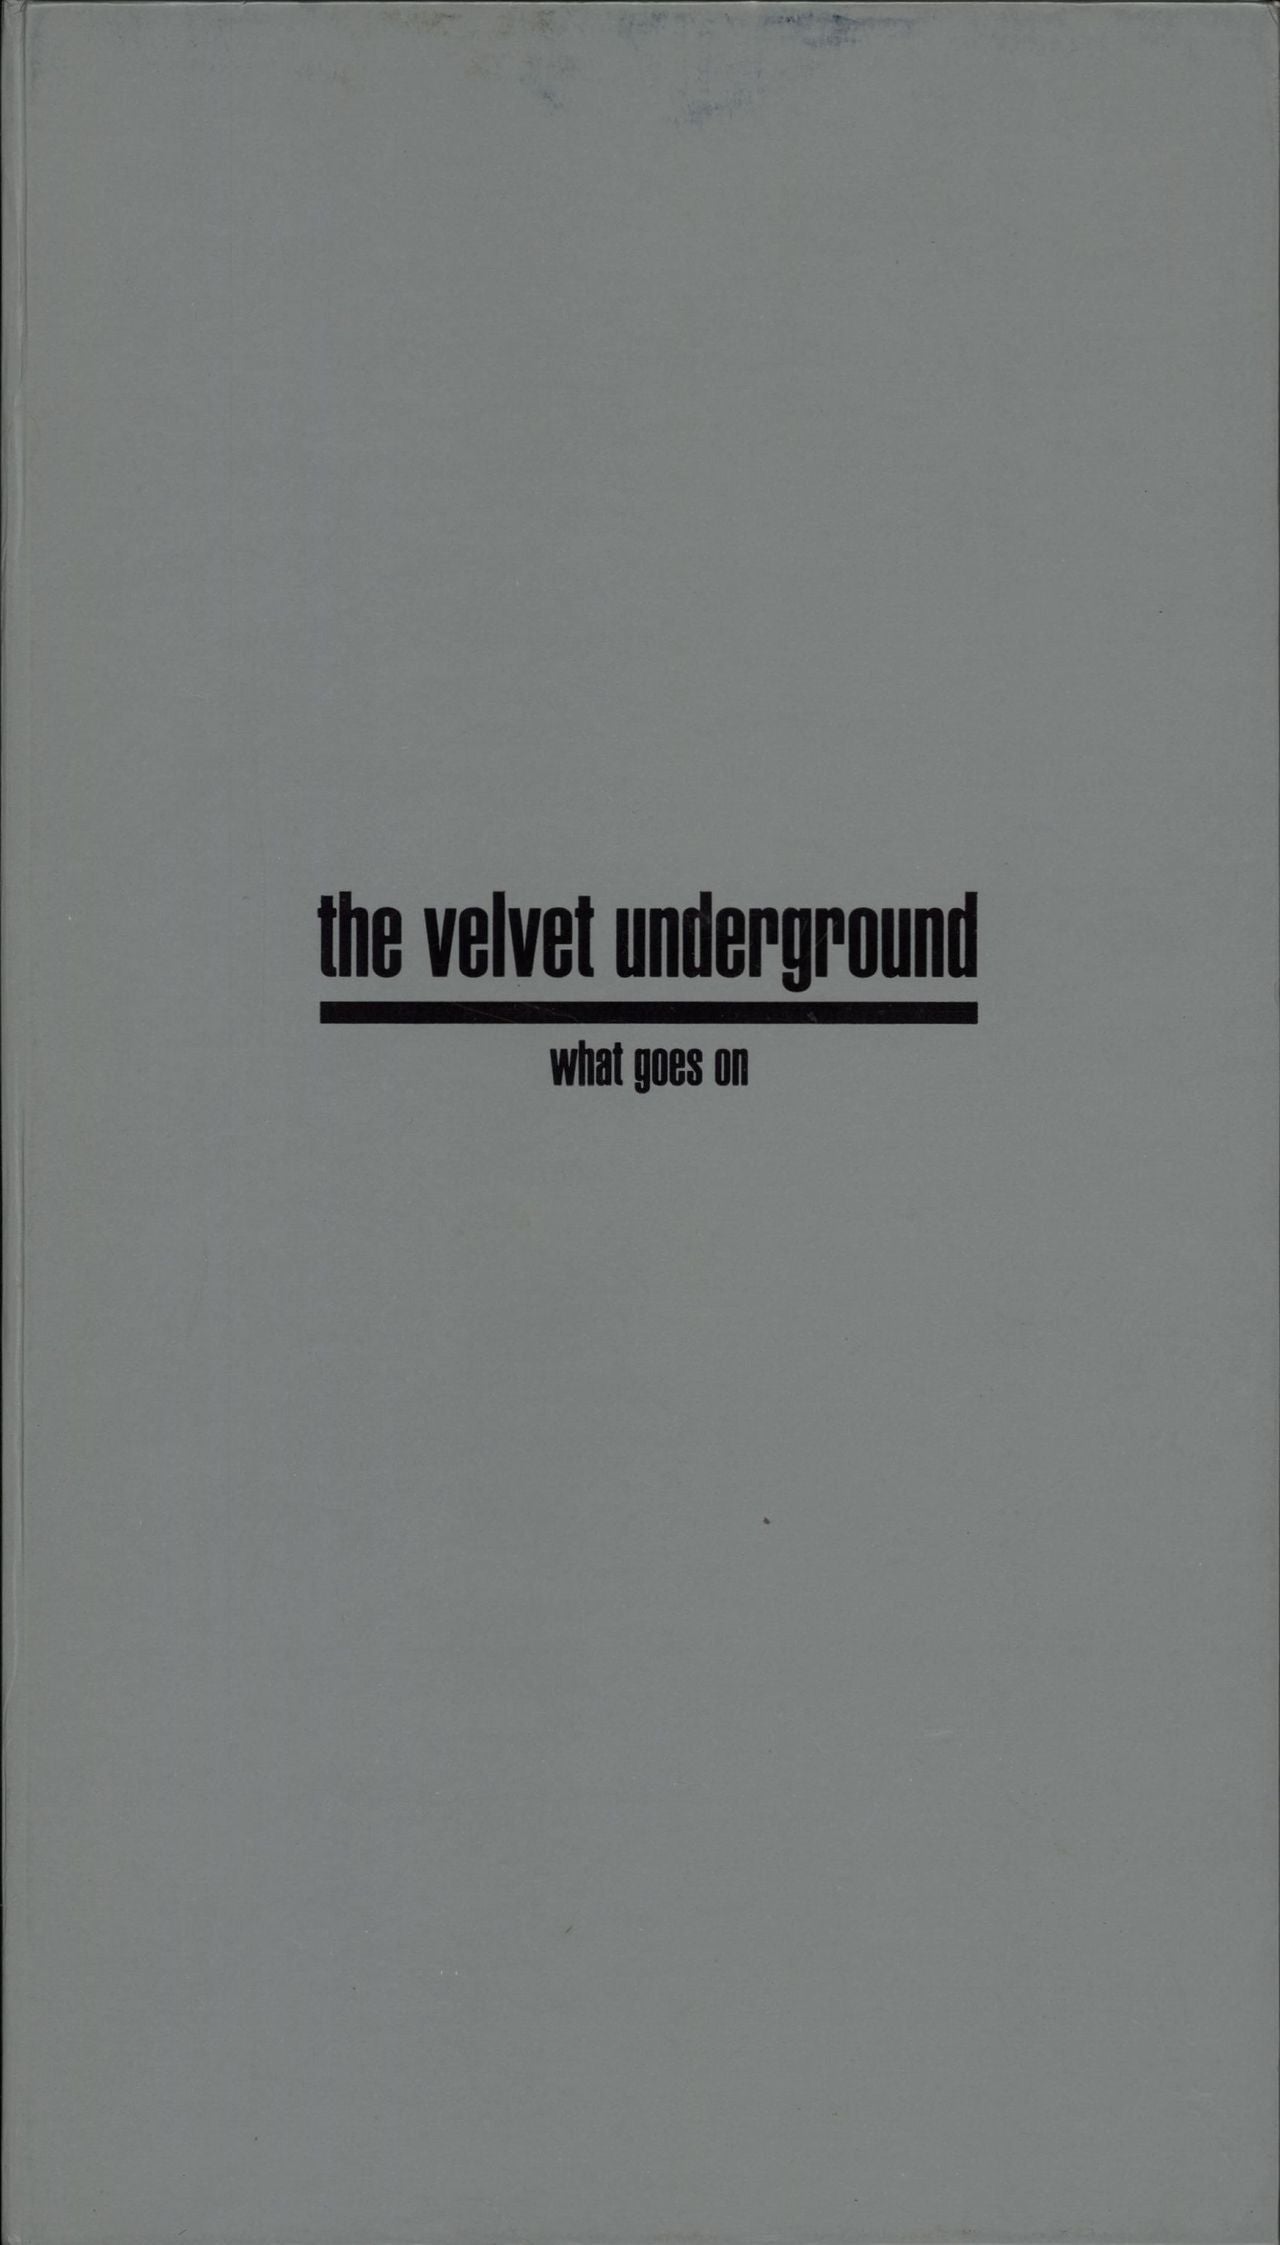 Velvet Underground What Goes on Australian Box Set RVCD28 Raven Records 1993